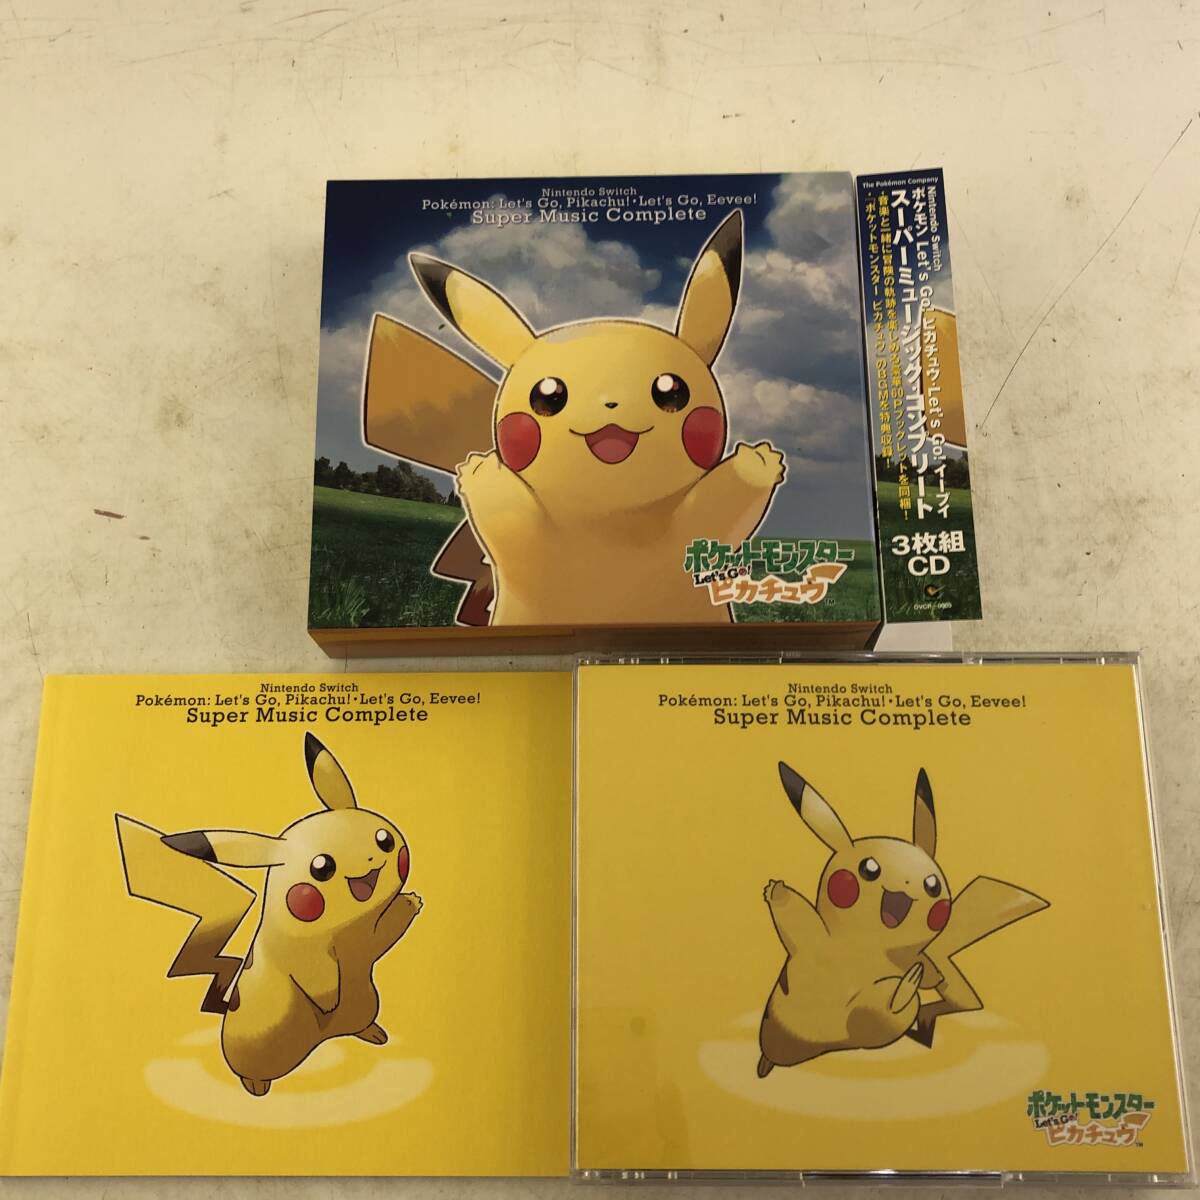 [ прекрасный товар ] саундтрек CD Nintendo Switch Pokemon Let*s Go! Пикачу *Let*s Go!i-bi super музыка * Complete 